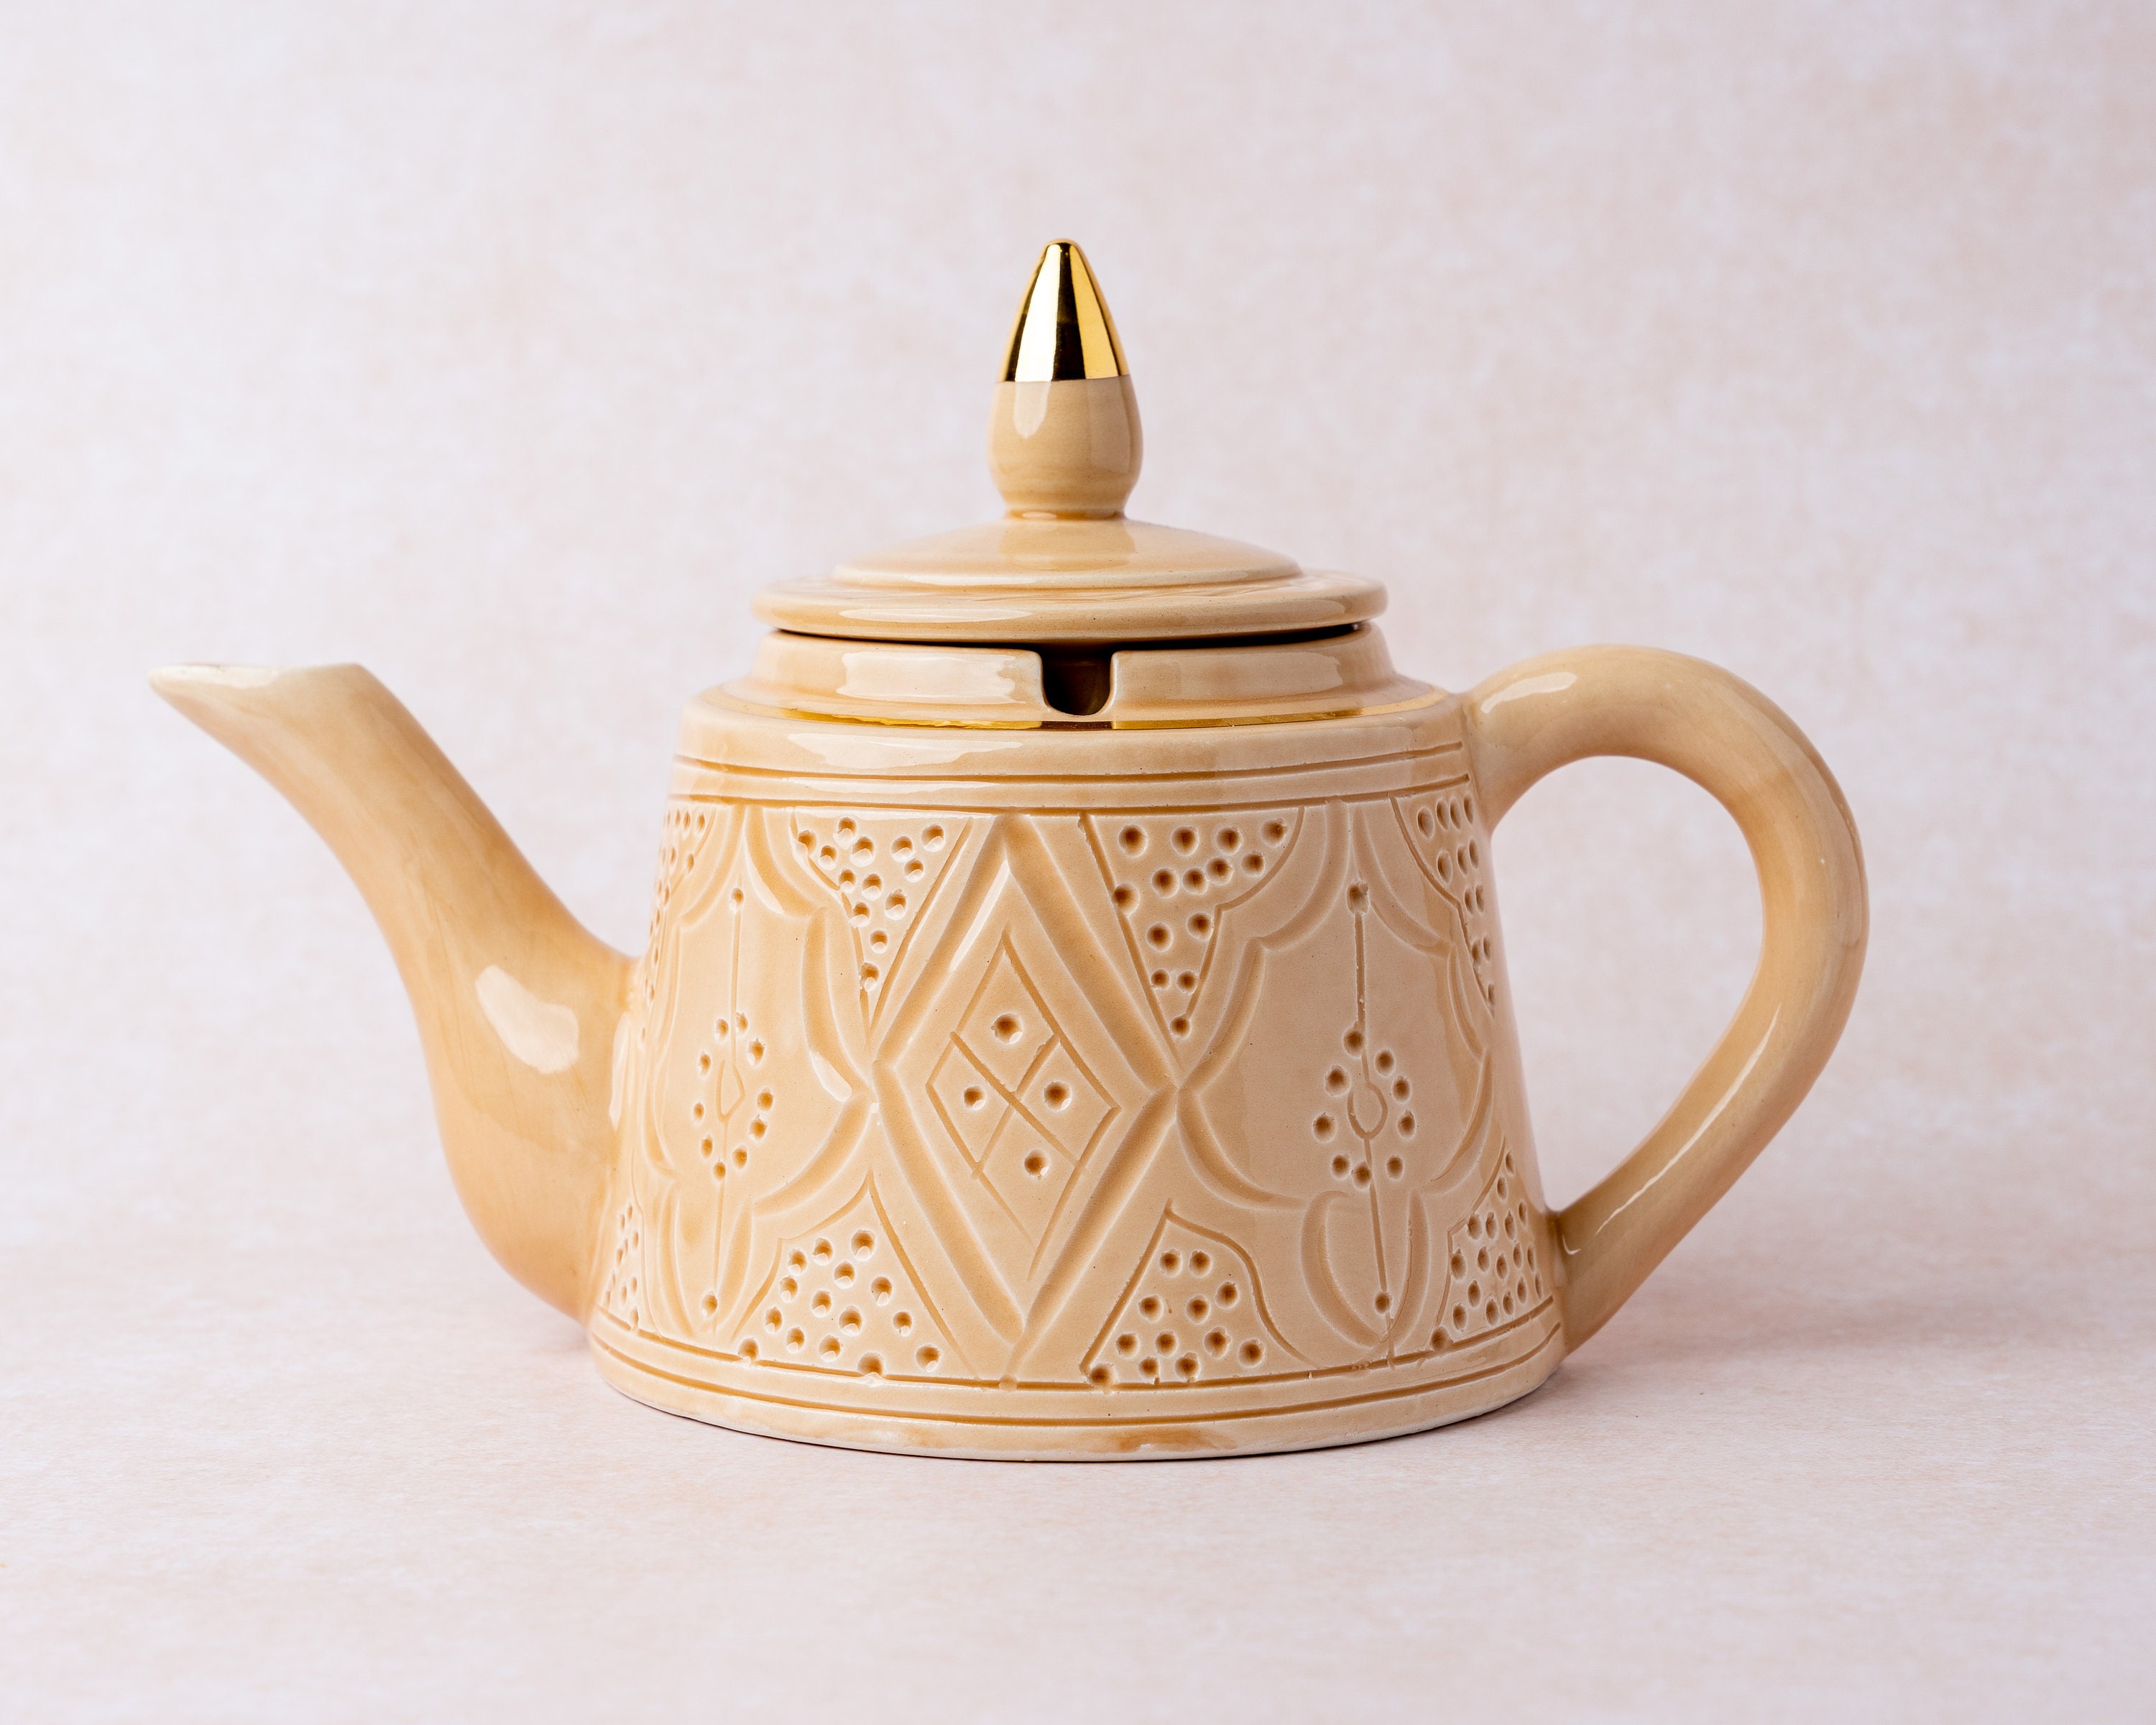 théière en poterie faite à la main | théière céramique jetée bouilloire thé blanche turque, théière décorative